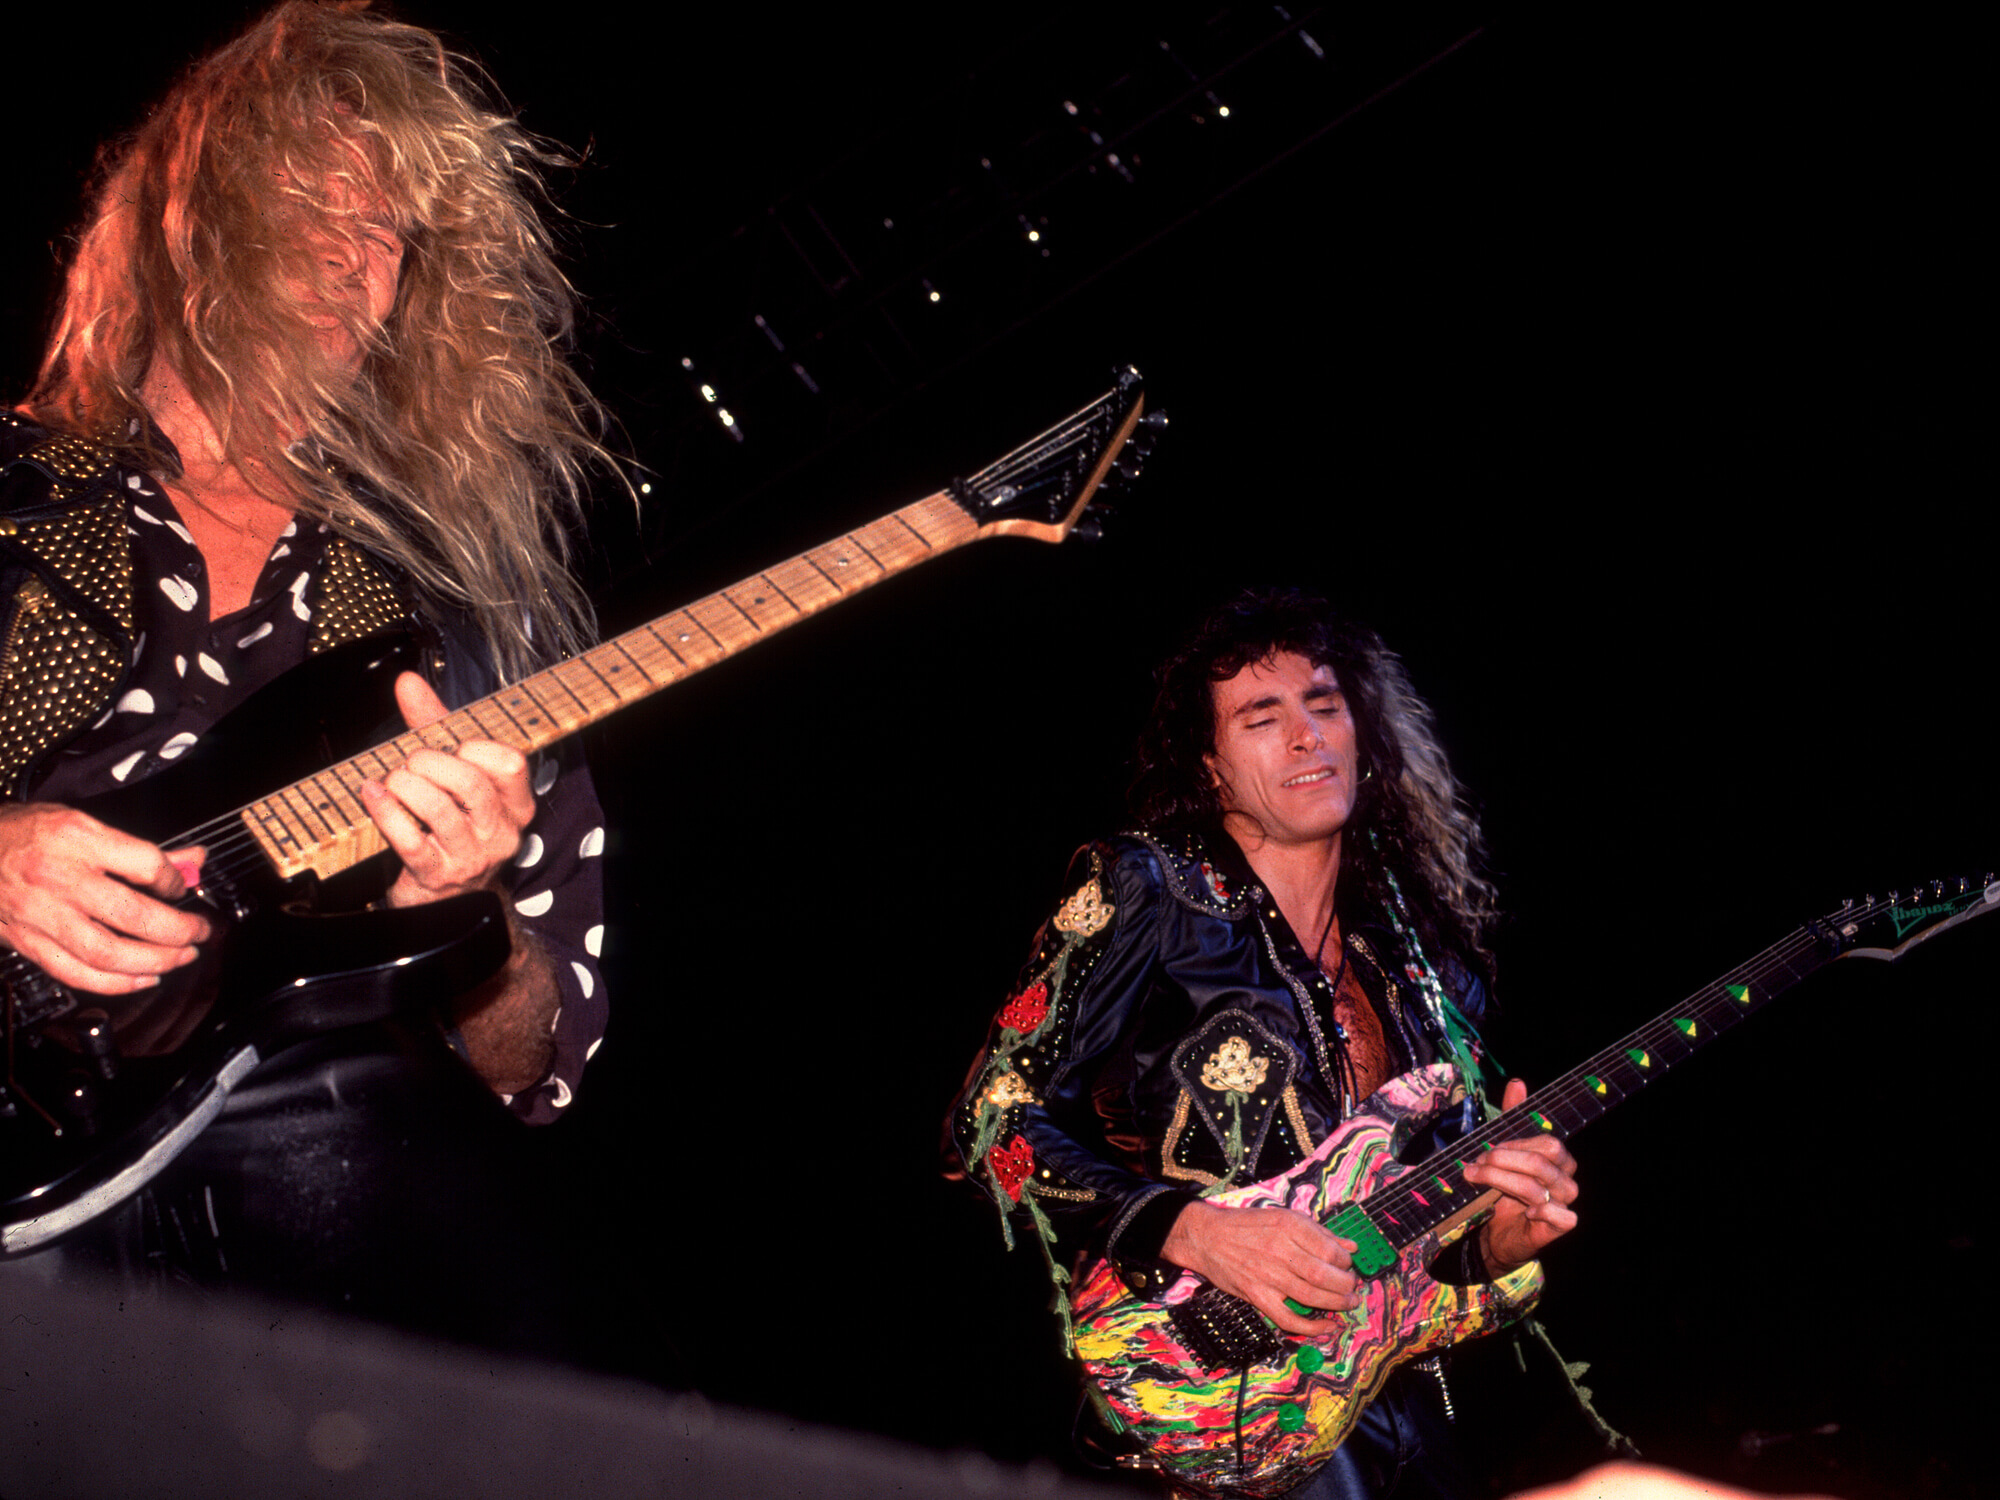 Adrian Vandenberg (left) and Steve Vai (right) performing as Whitesnake